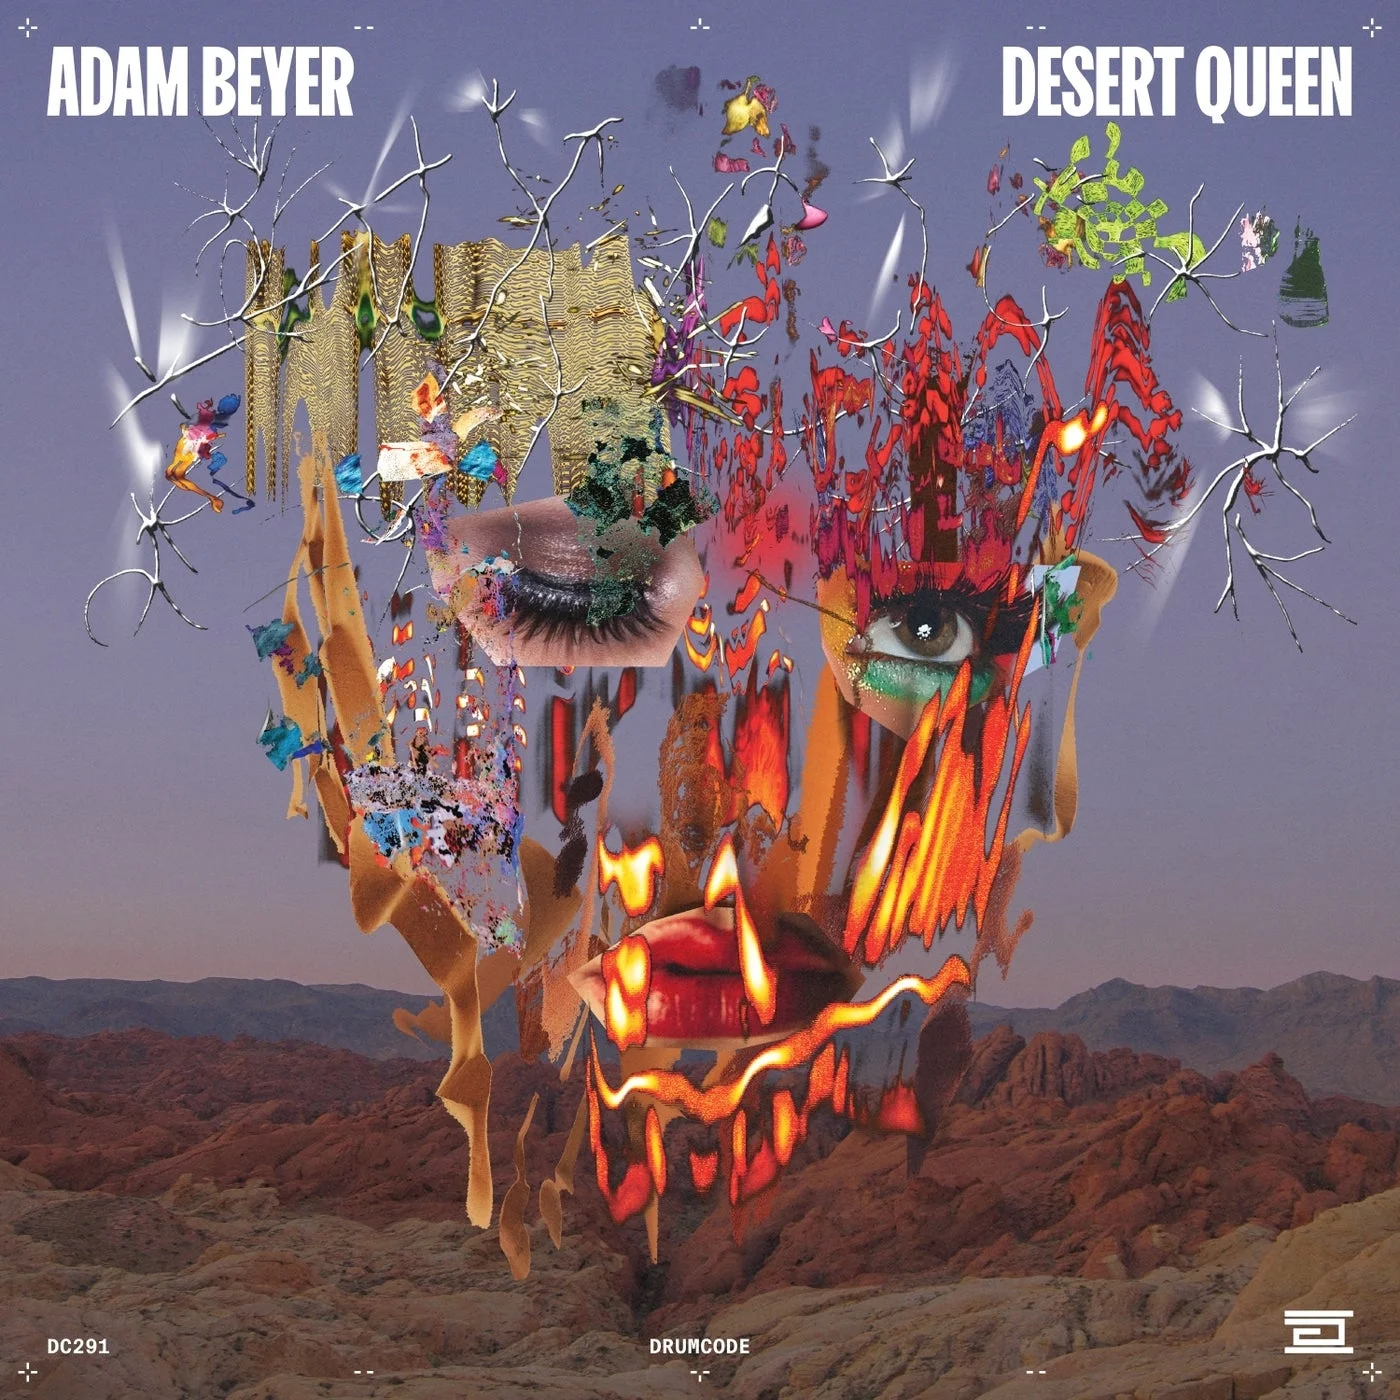 image cover: Adam Beyer - Desert Queen on Drumcode